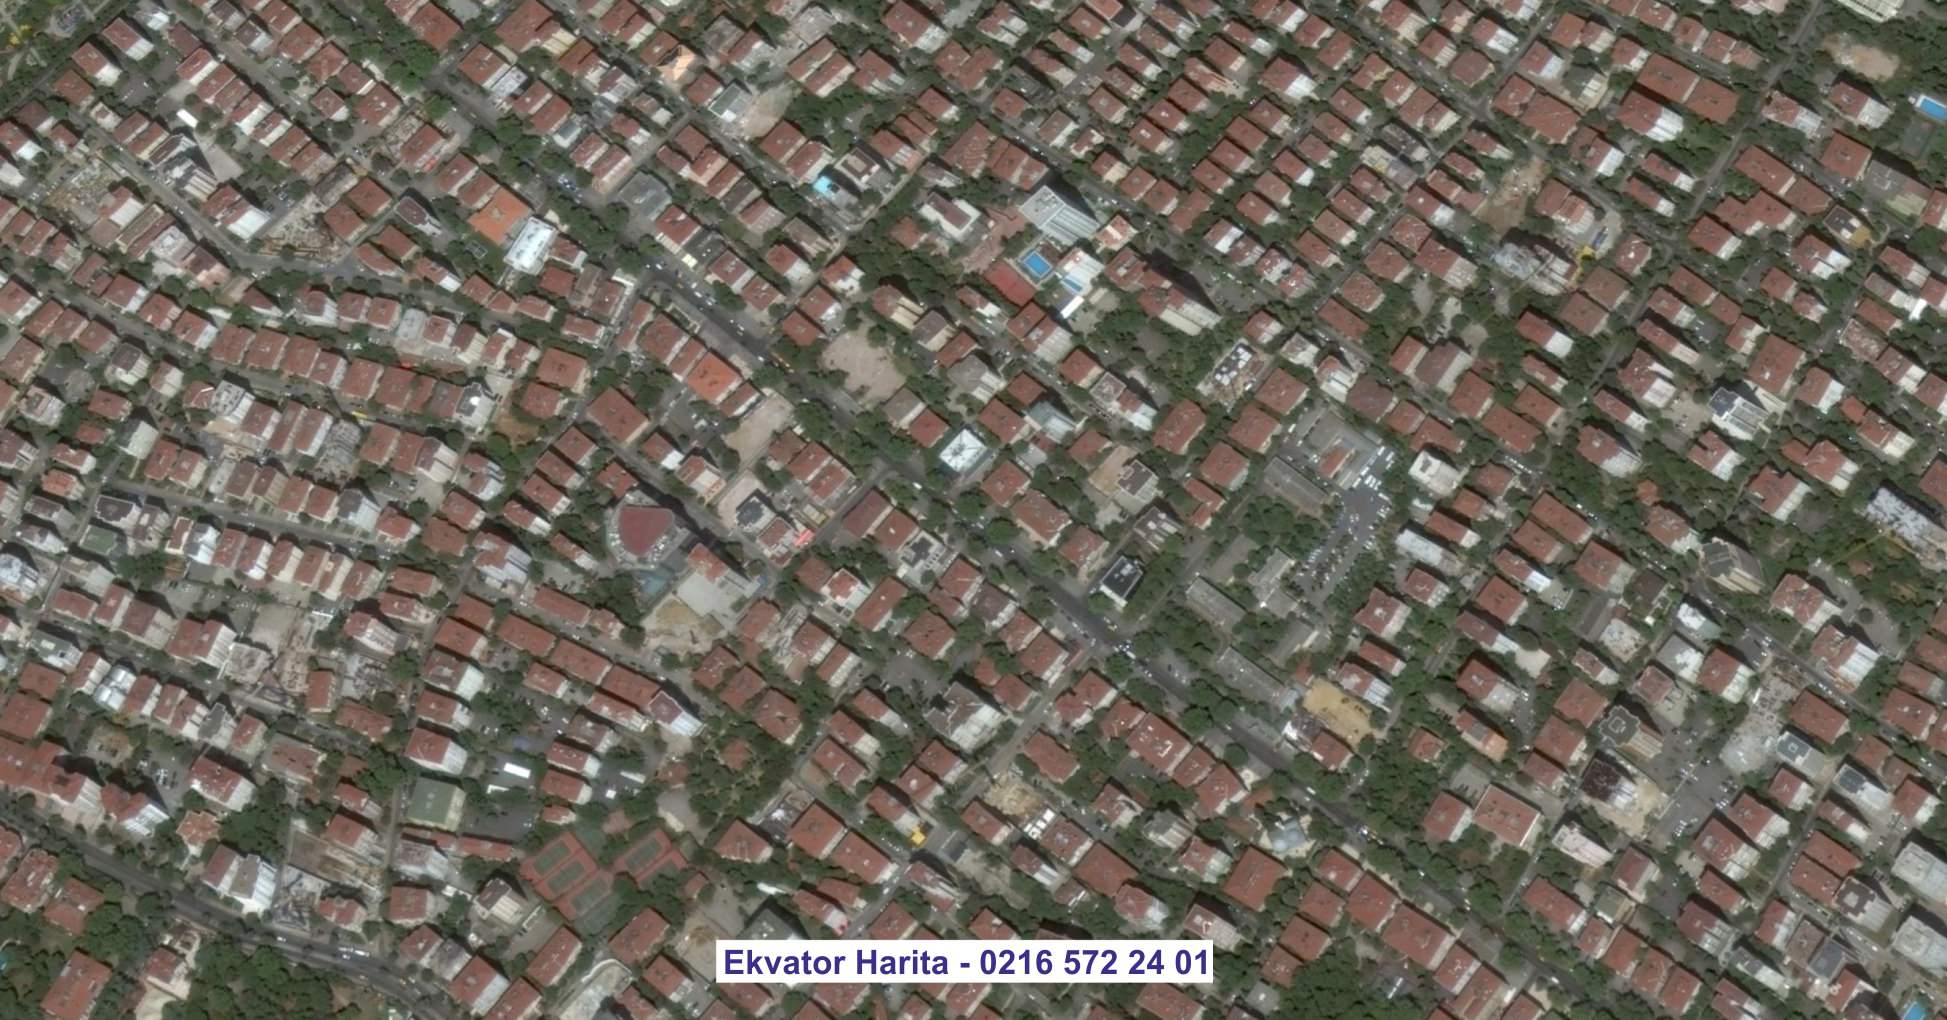 Menemen Uydu Görüntüsü Örnek Fotoğrafı